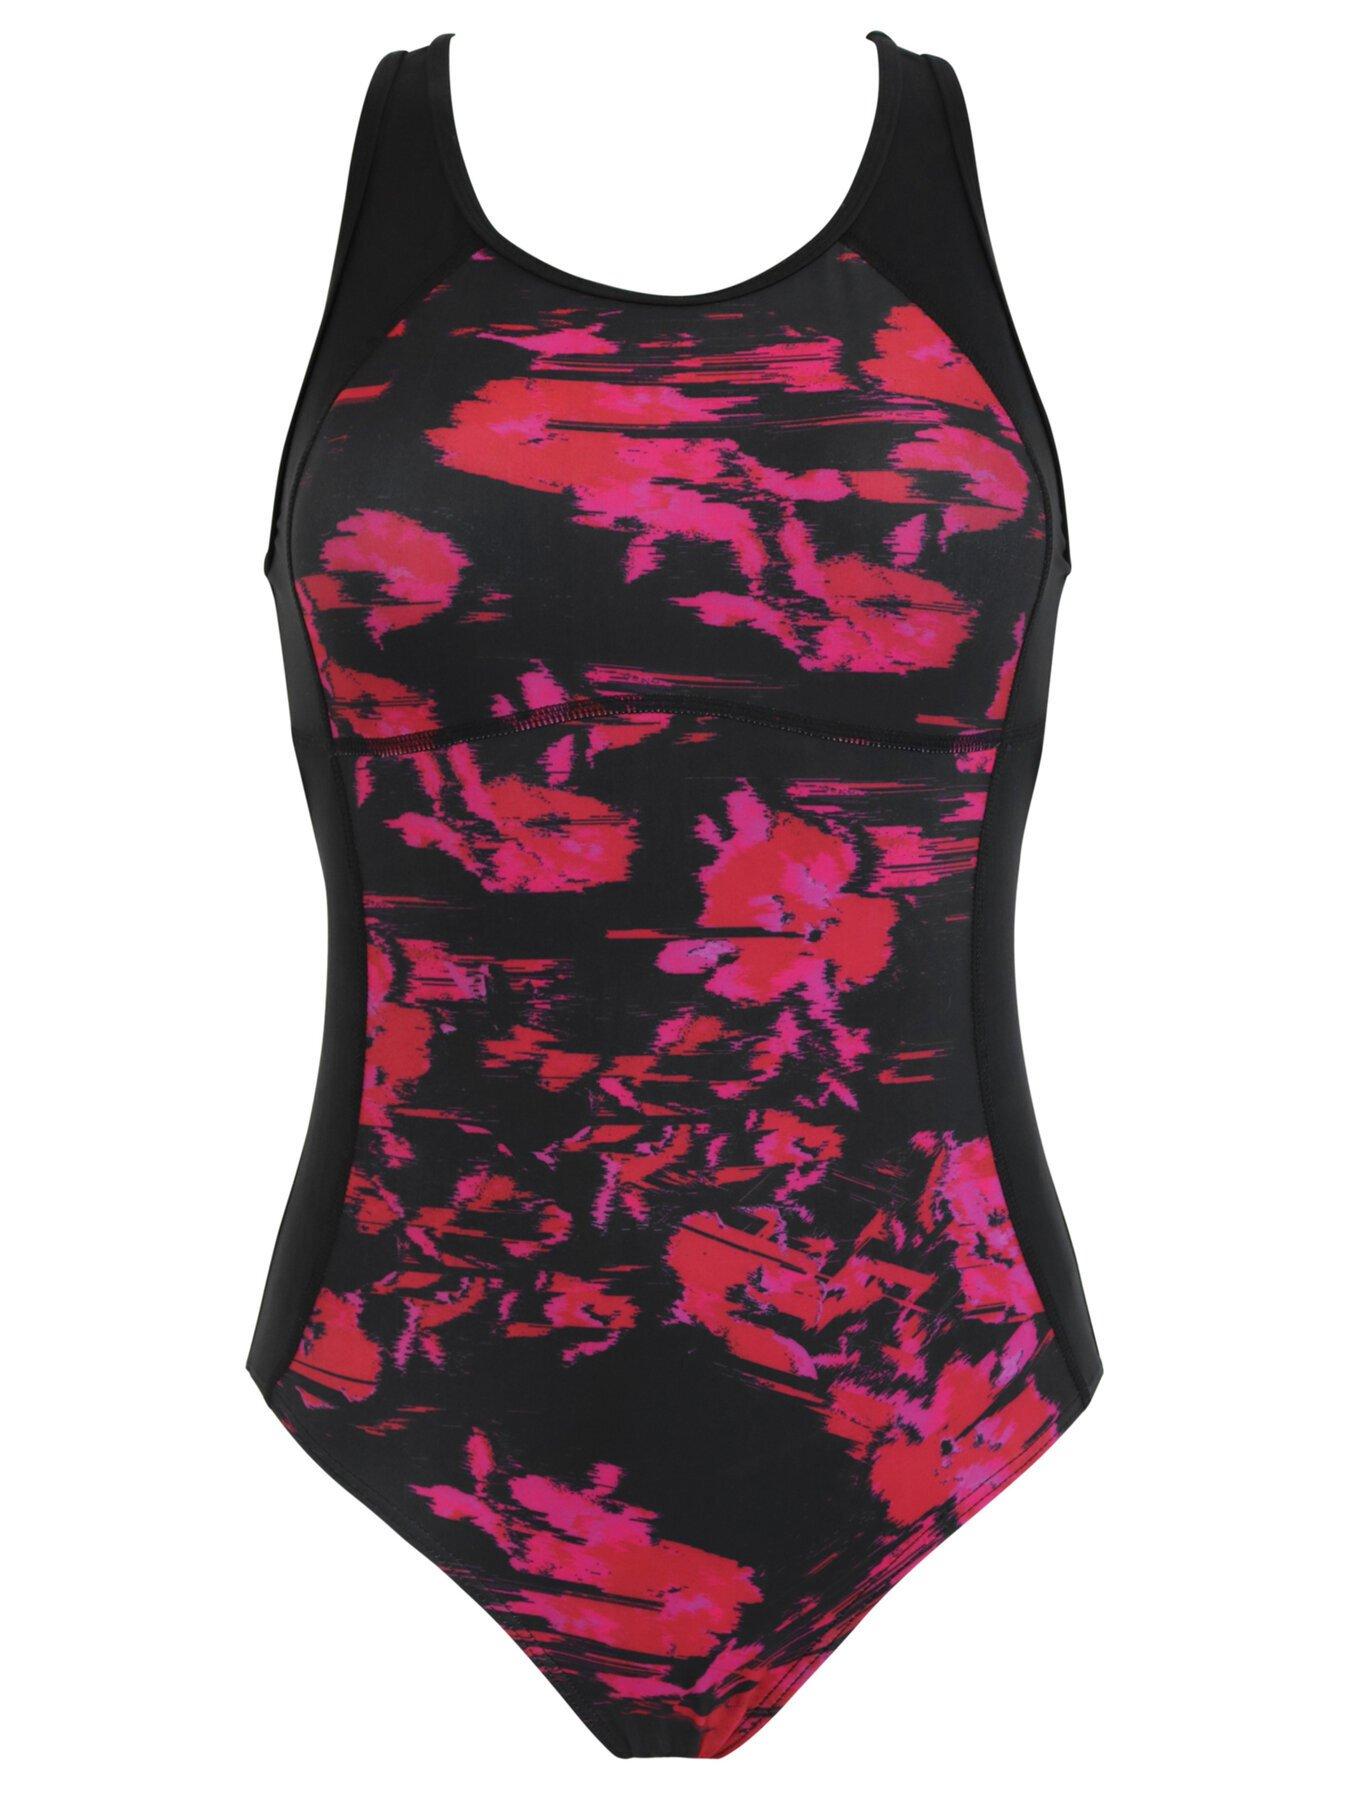 Pour Moi Black Floral Energy Chlorine Resistant Swimsuit